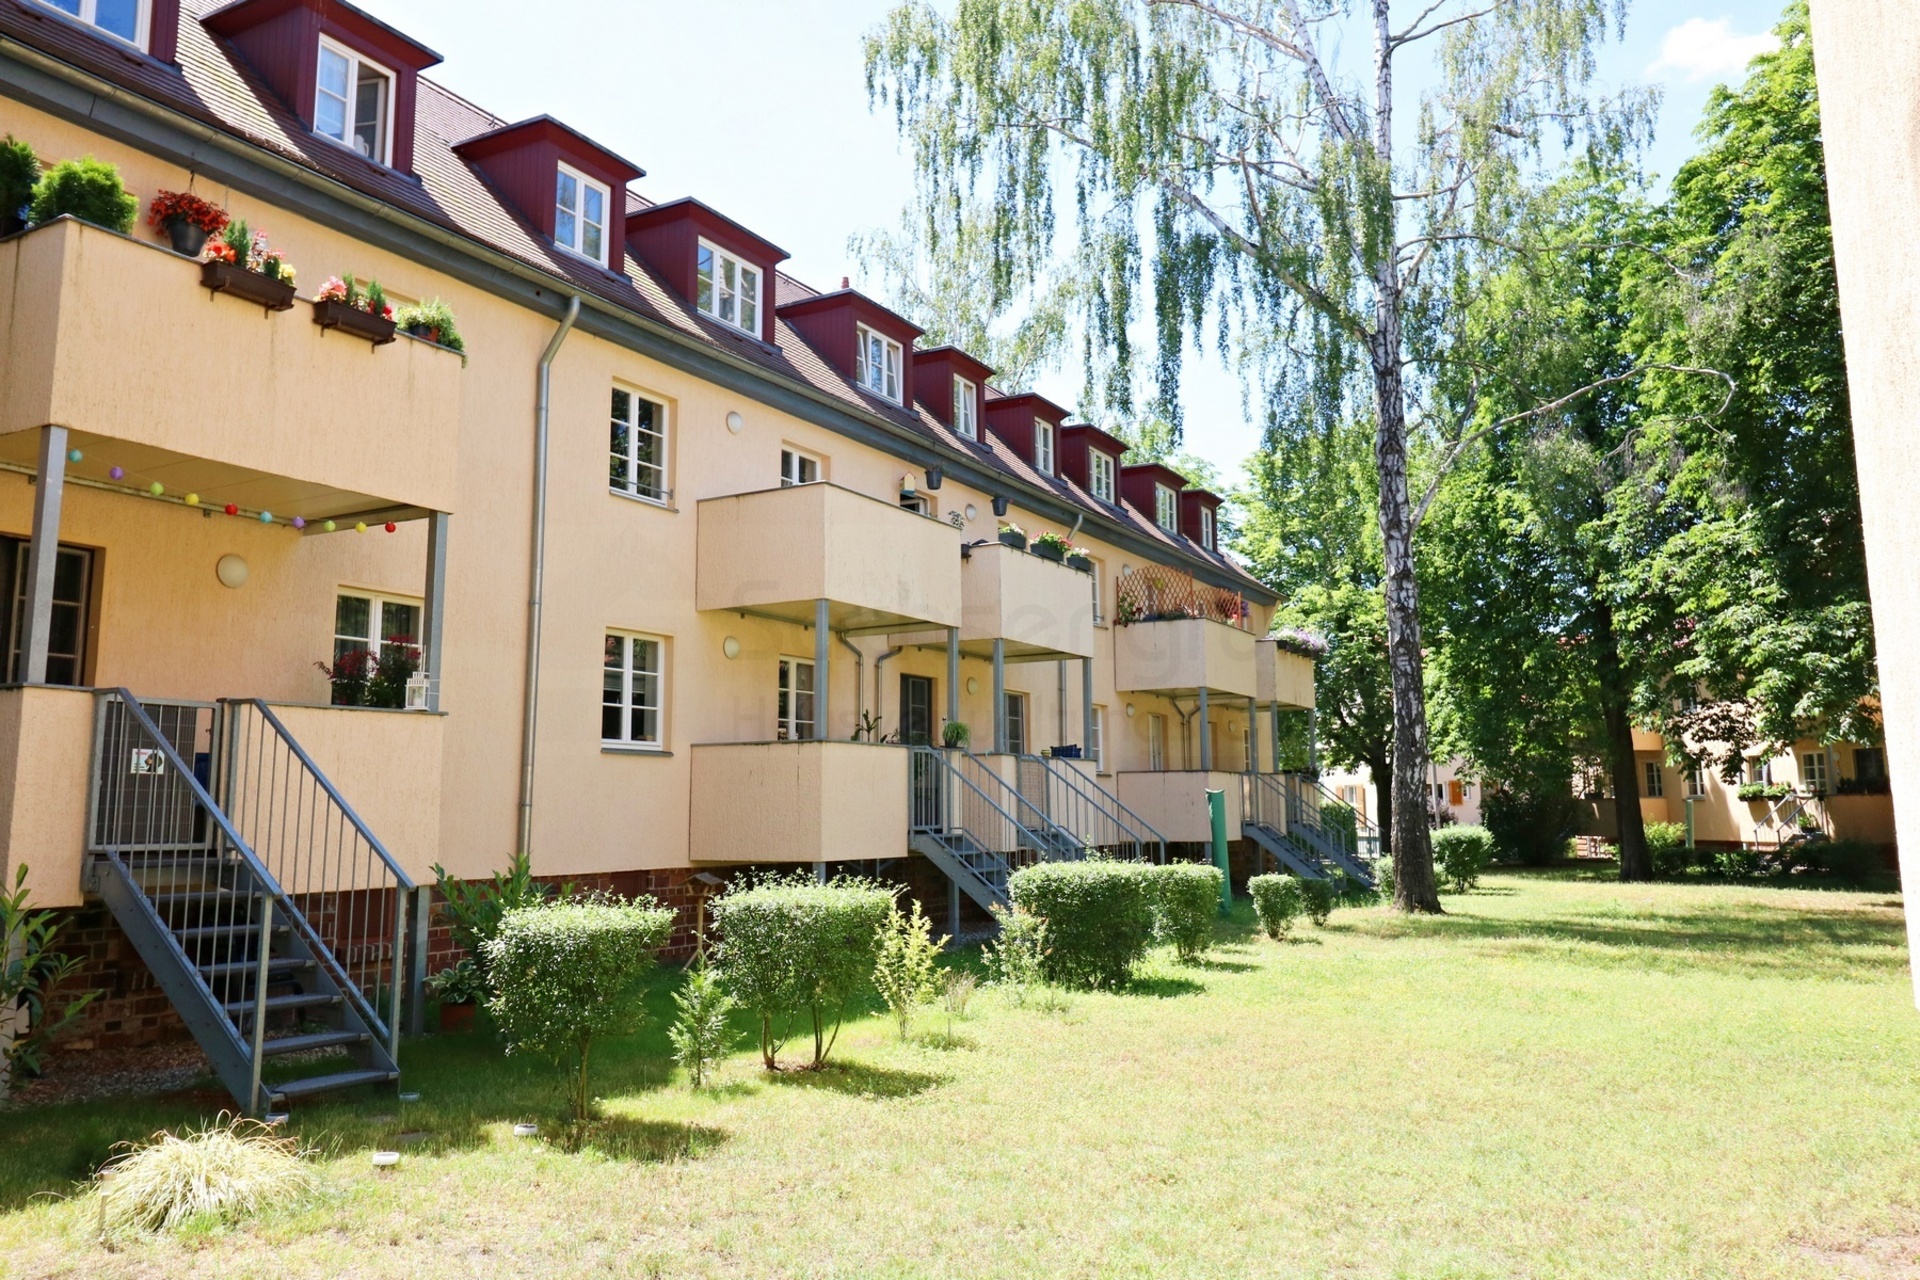 Wohnen auf zwei Ebenen: Maisonette mit 2 Bädern, Balkon & idyllische Grünflächen in Leipzig-Dölitz, 04279 Leipzig, Maisonettewohnung